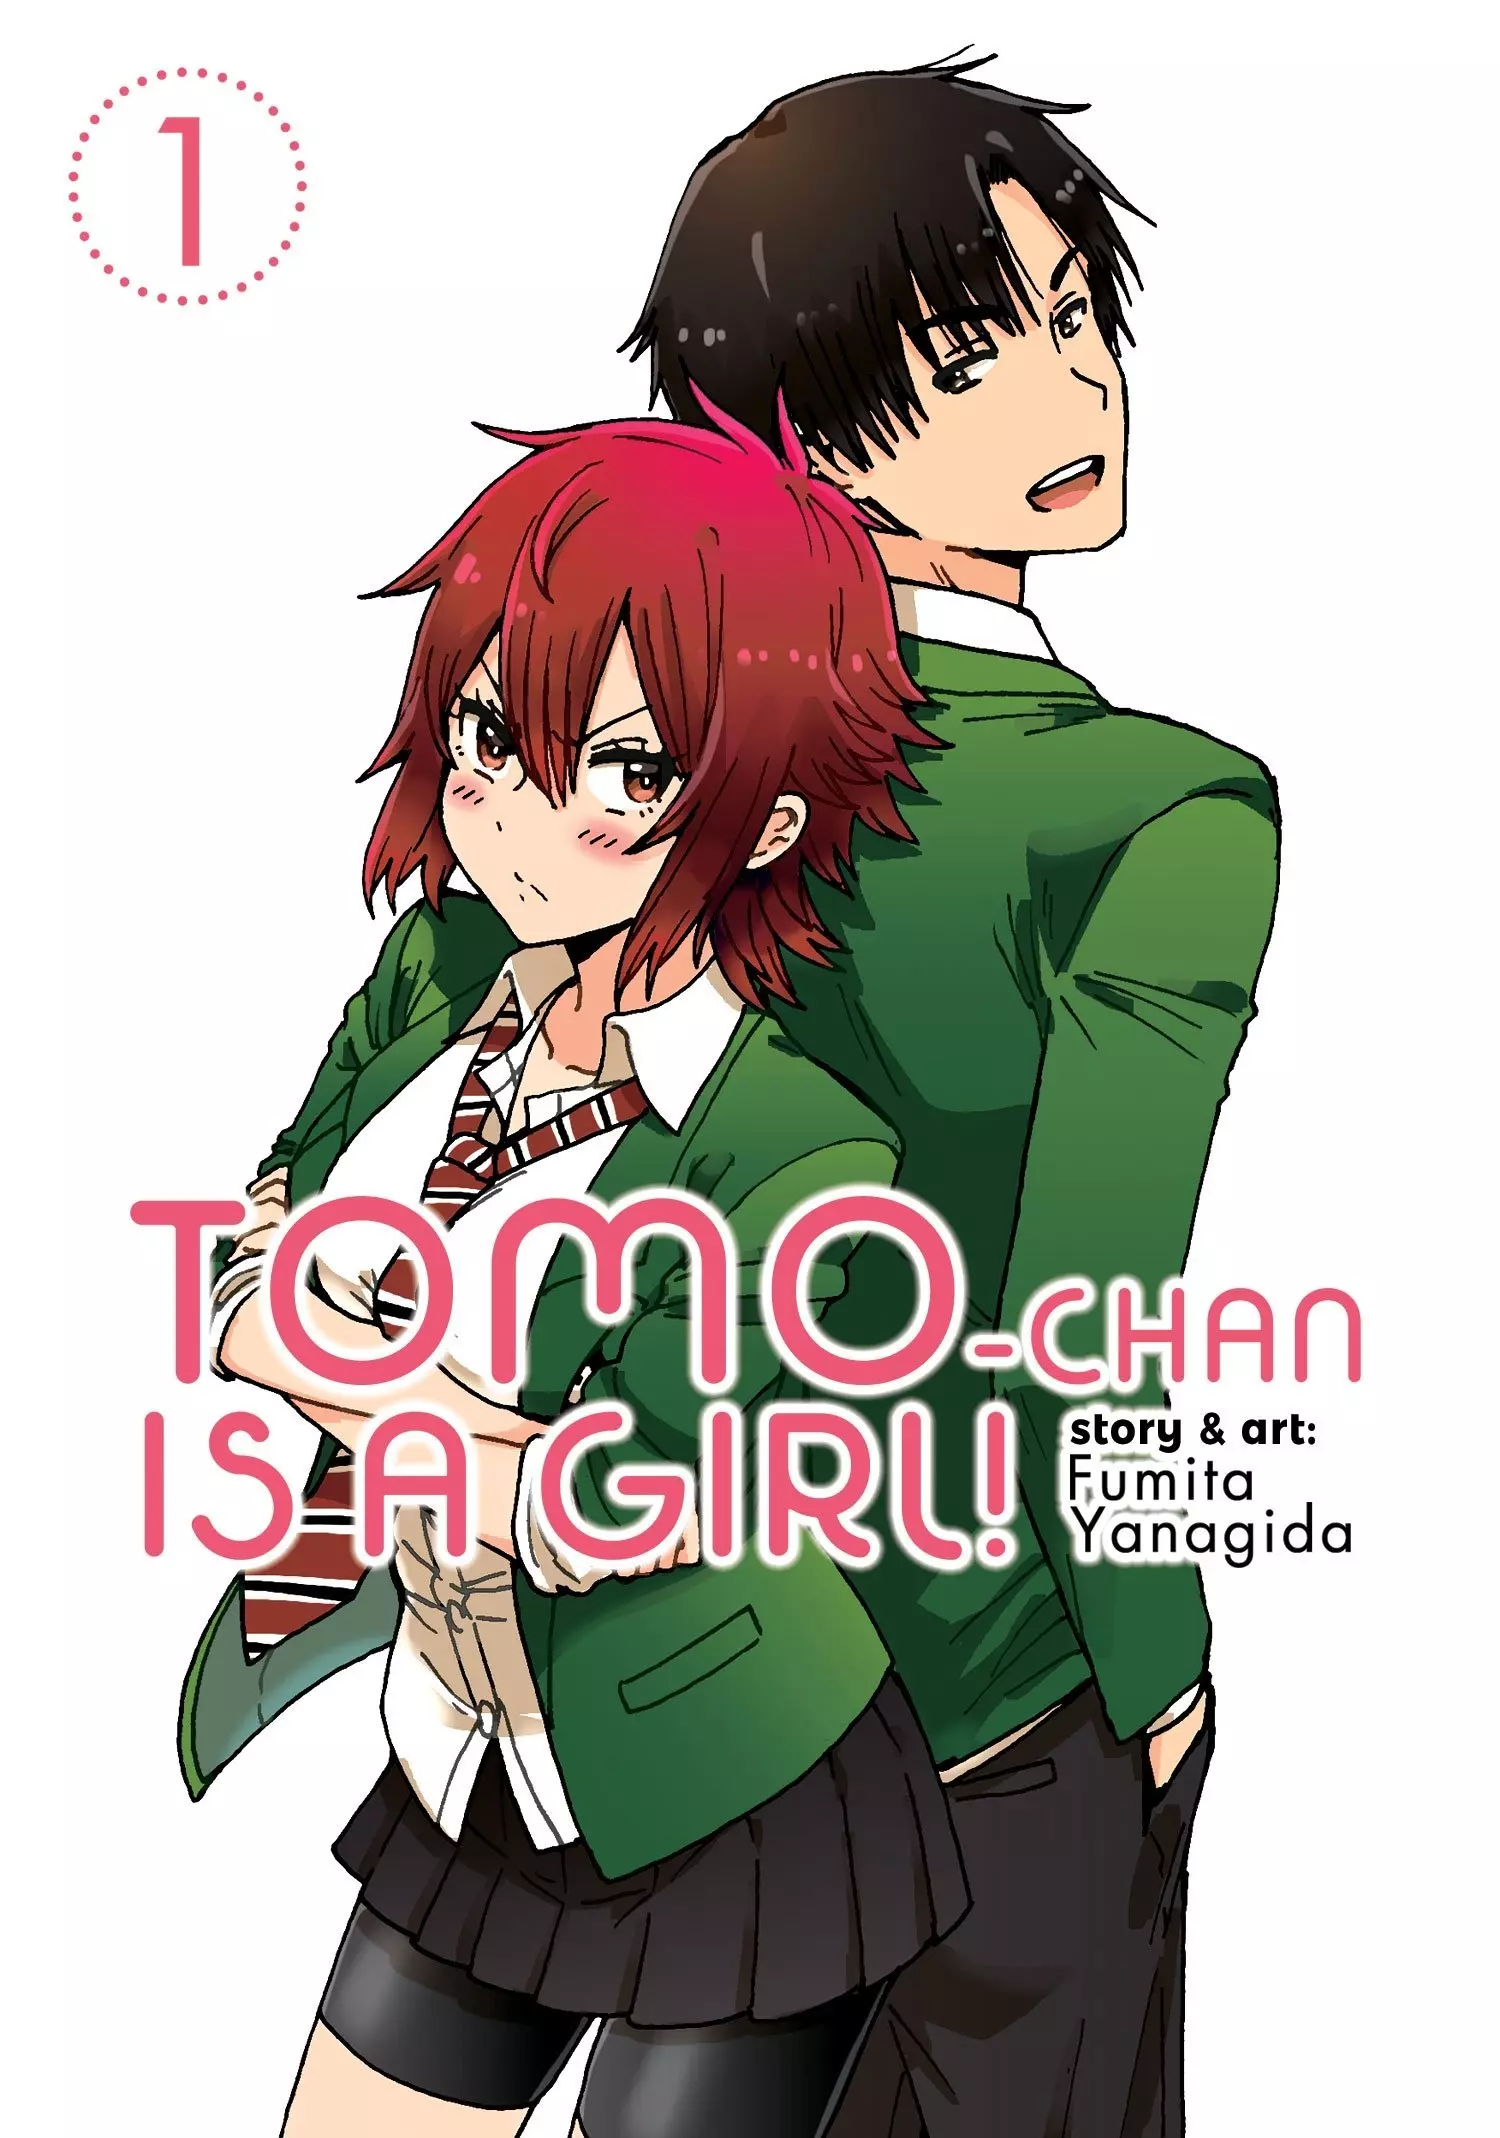 Crunchyroll.pt - Você também pode ser uma princesa se você quiser, Tomo! 👸  (✨ Anime: Tomo-chan Is a Girl!) #tomochan